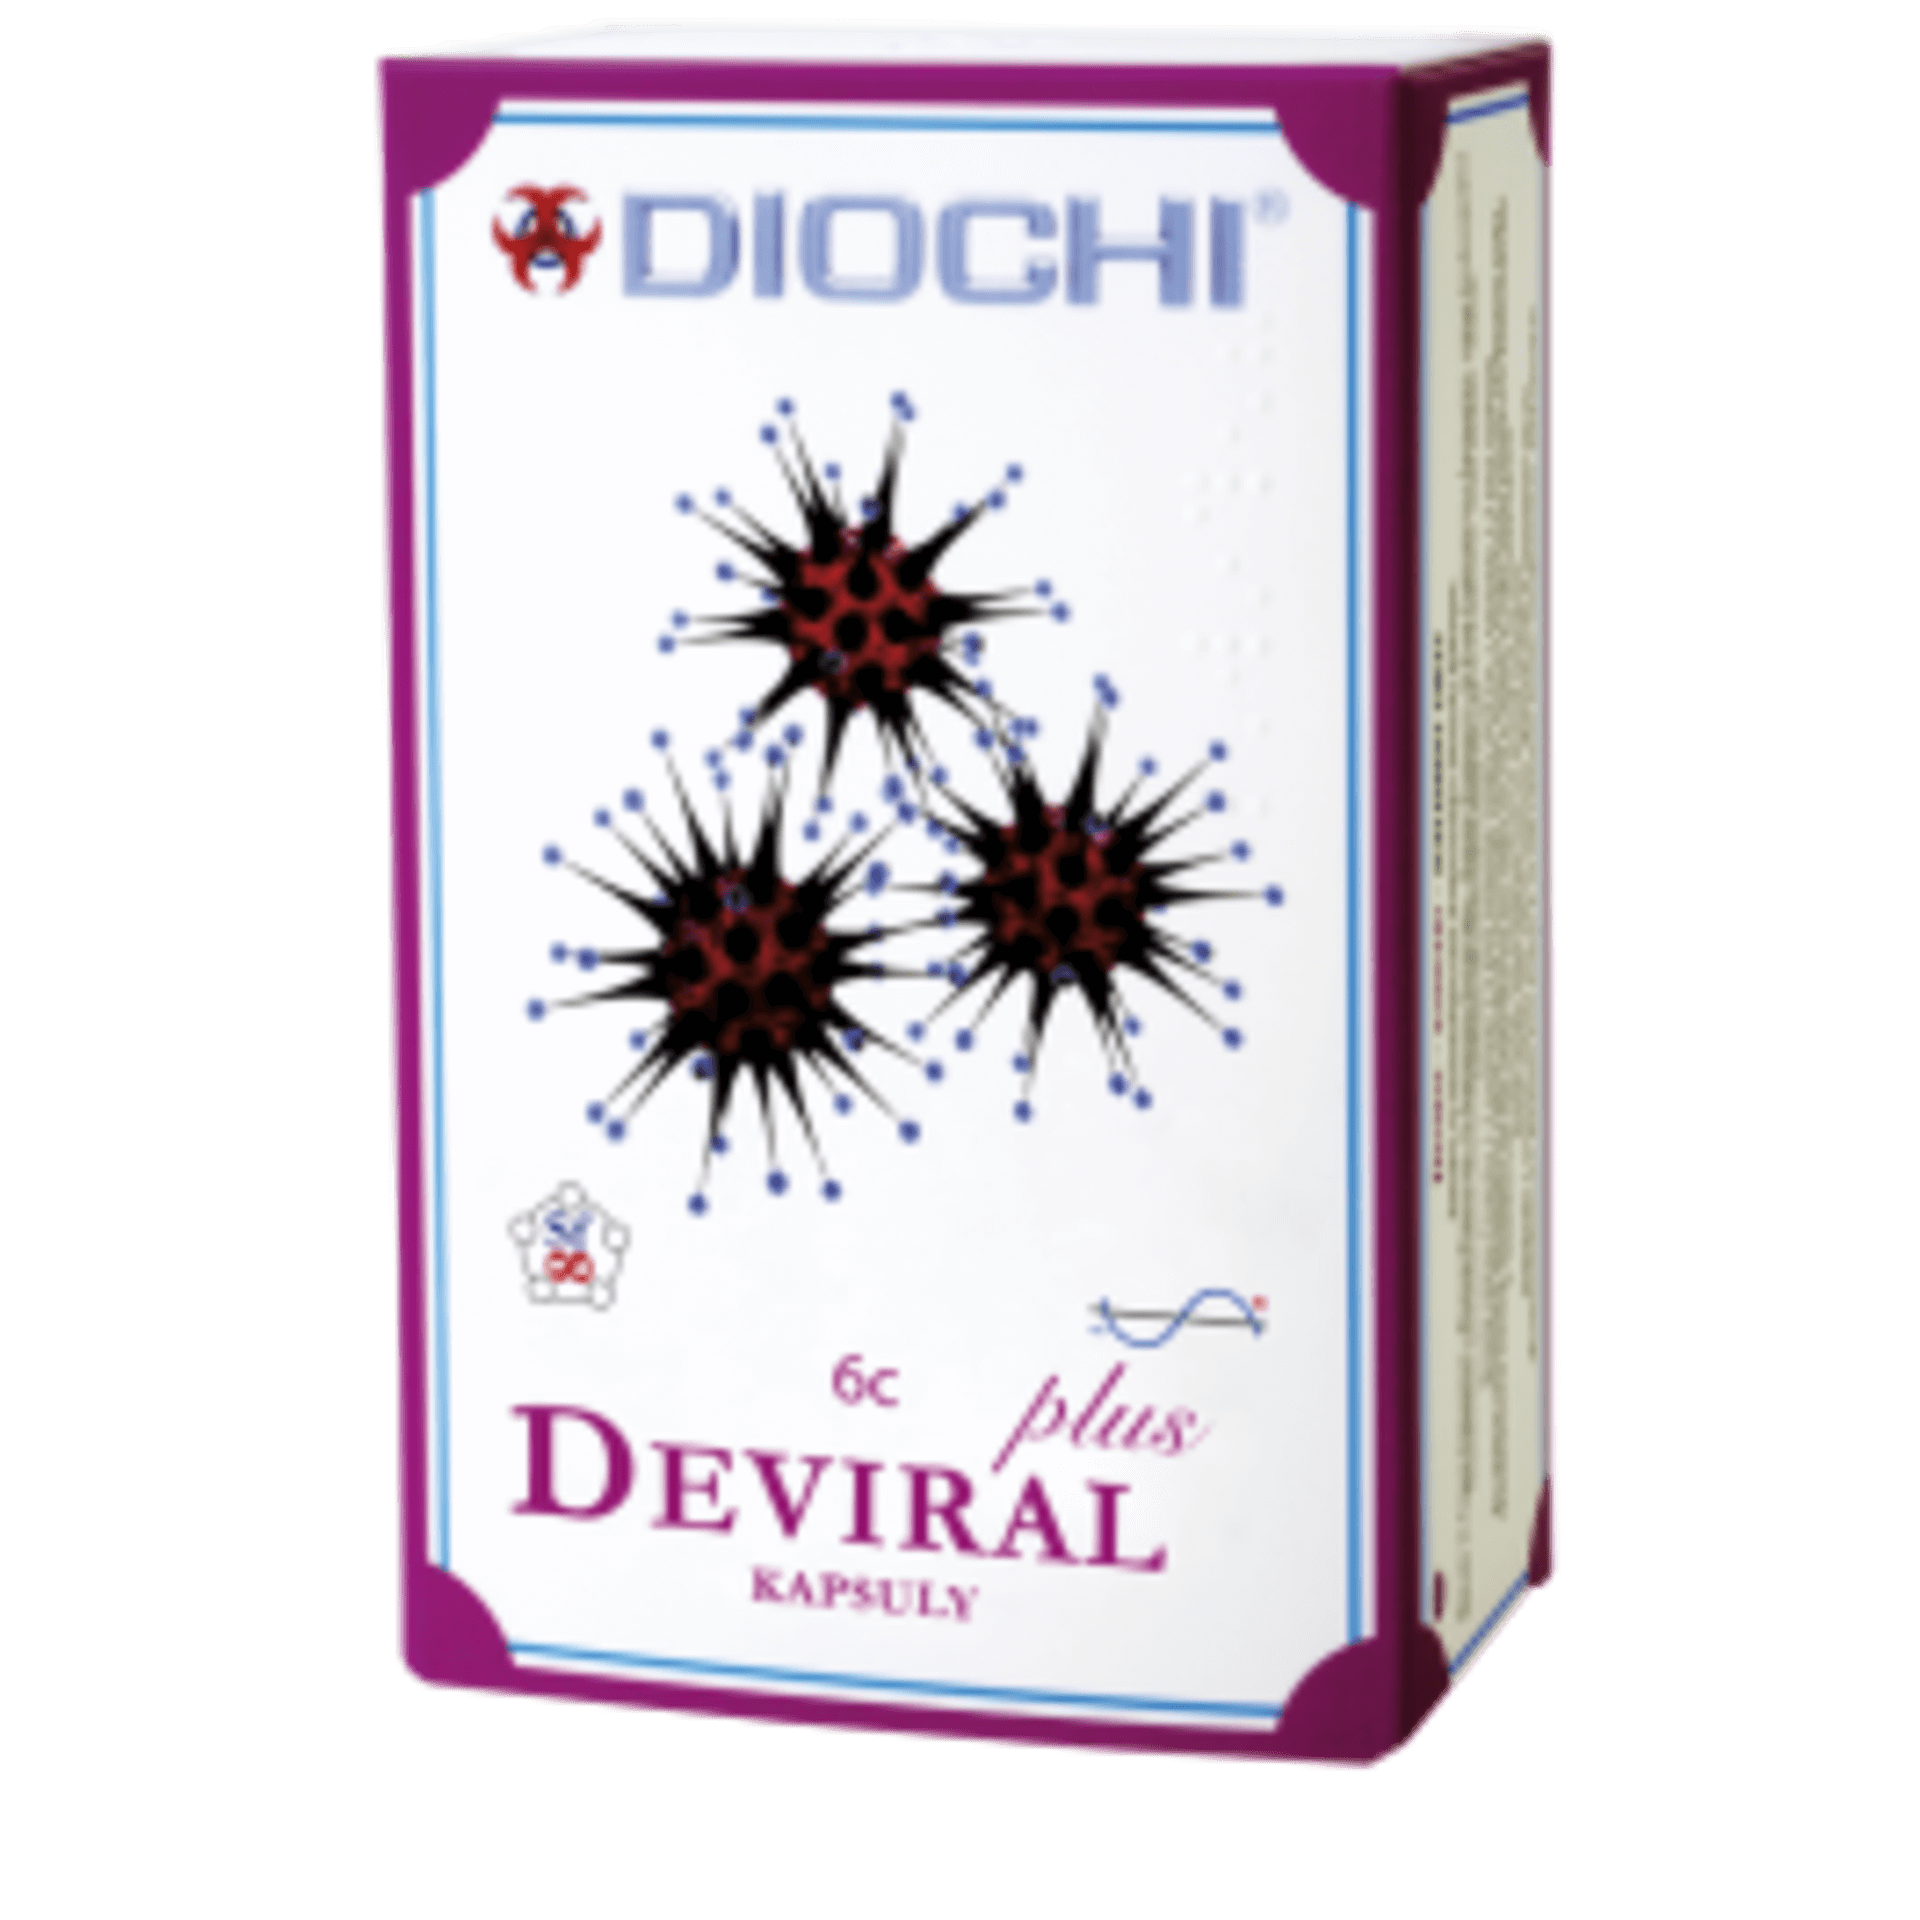 Diochi DEVIRAL PLUS 60 kapslí